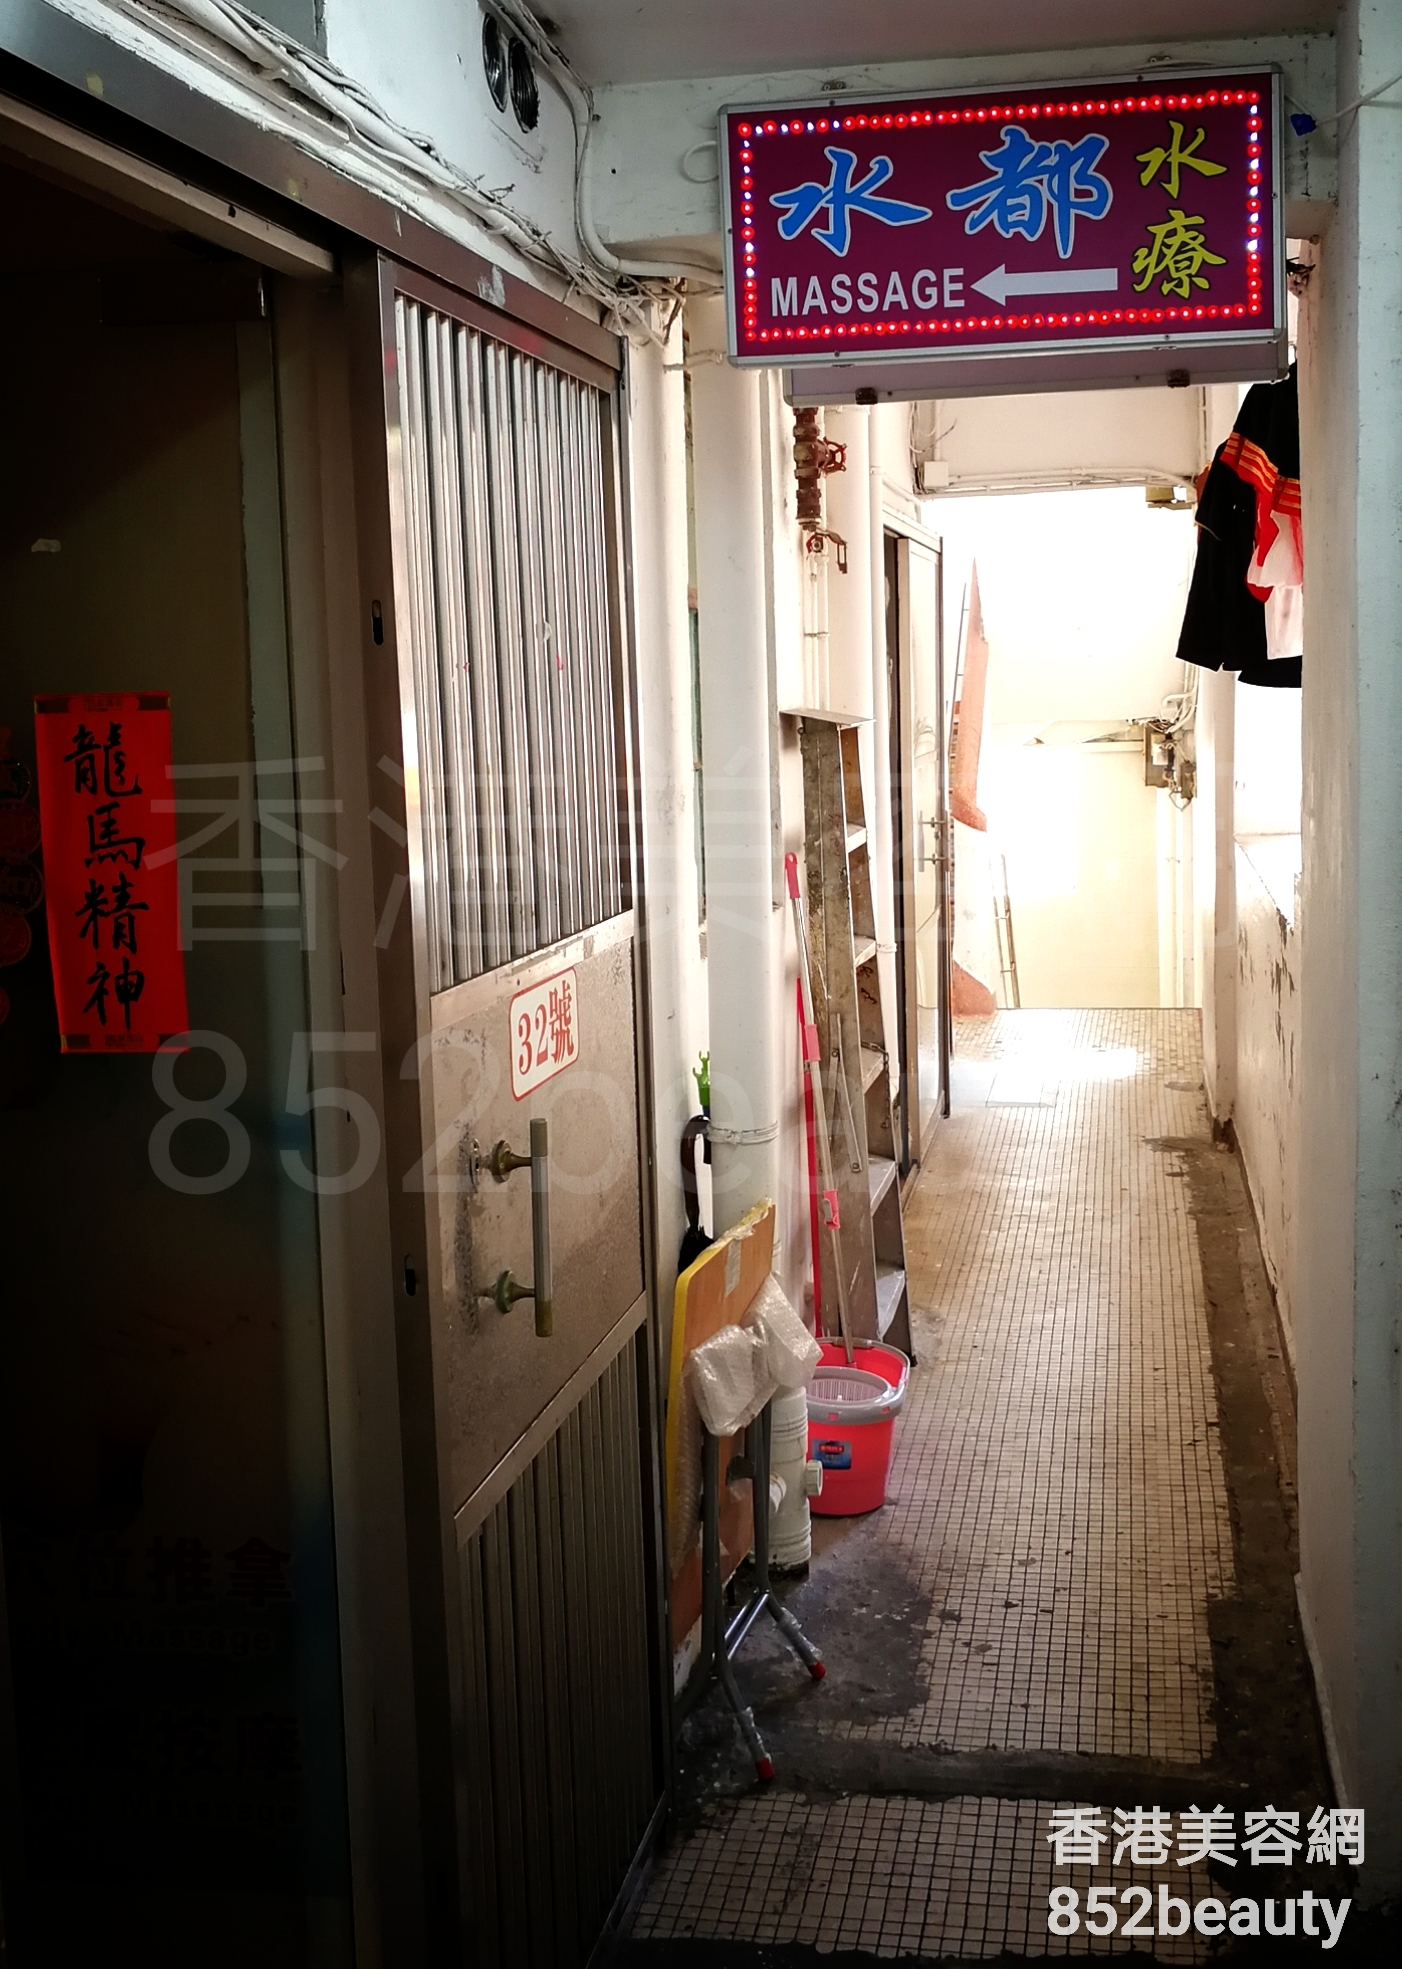 香港美容網 Hong Kong Beauty Salon 美容院 / 美容師: 水都水療